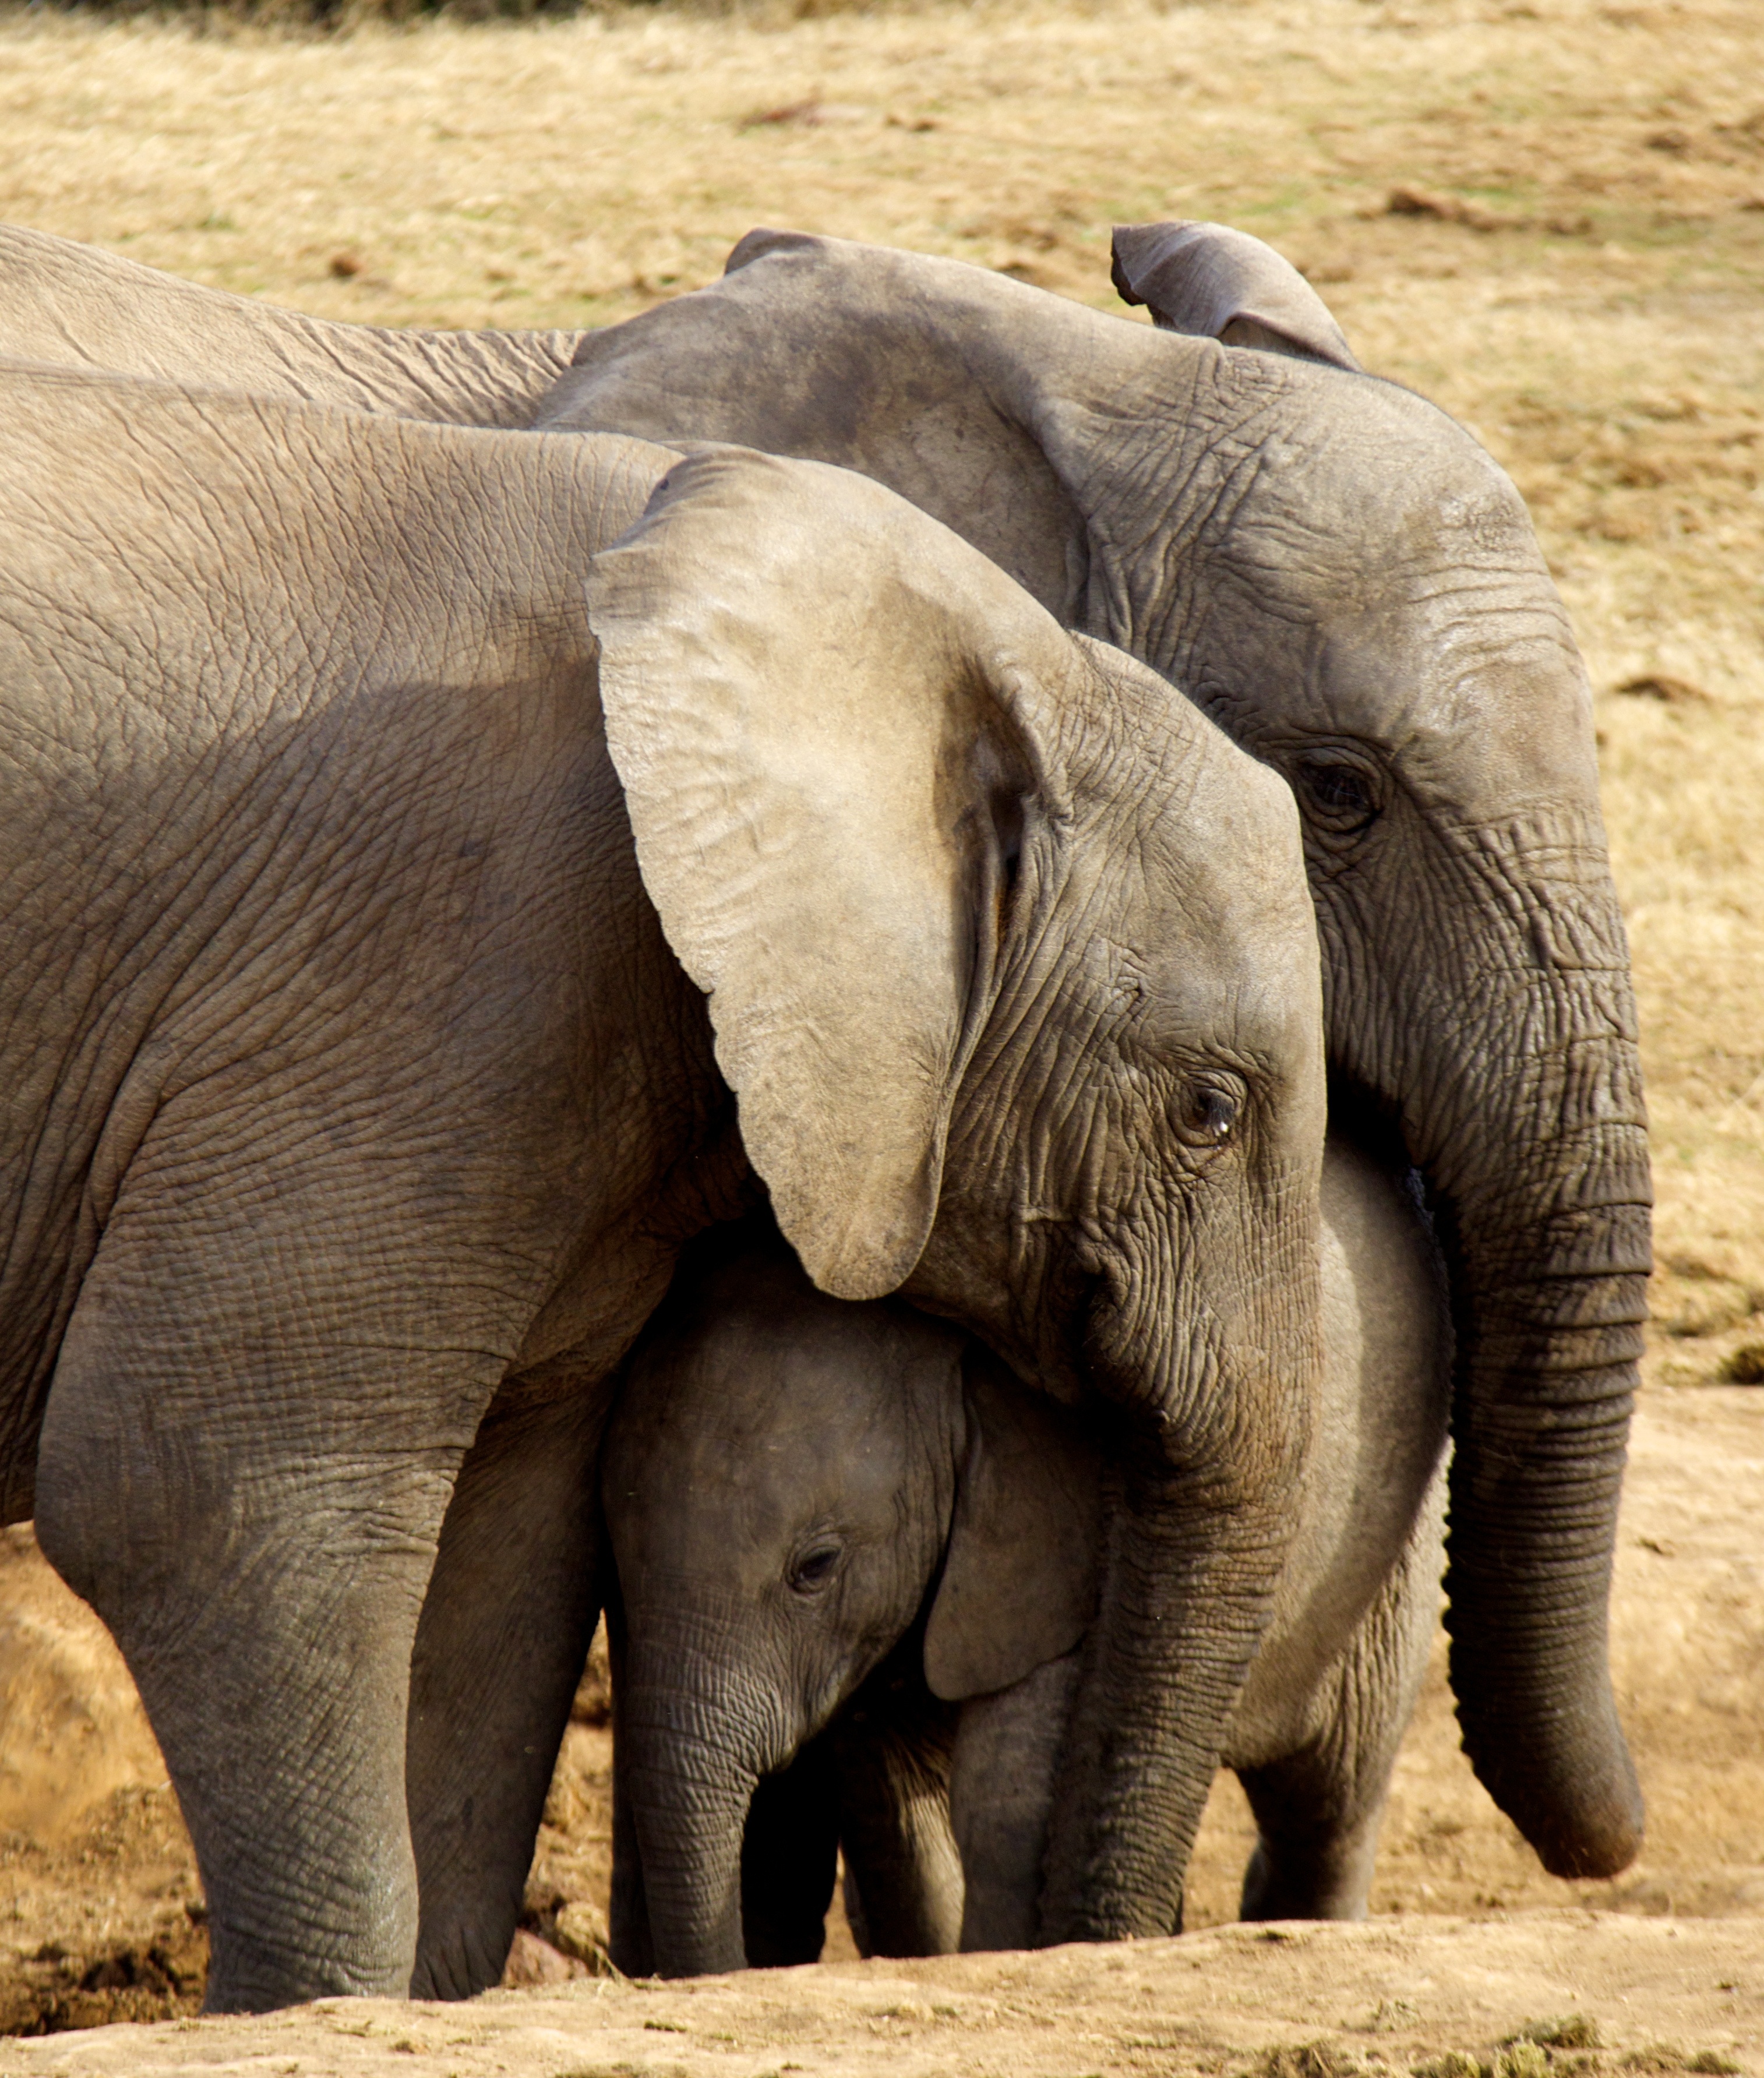 The Elephant family